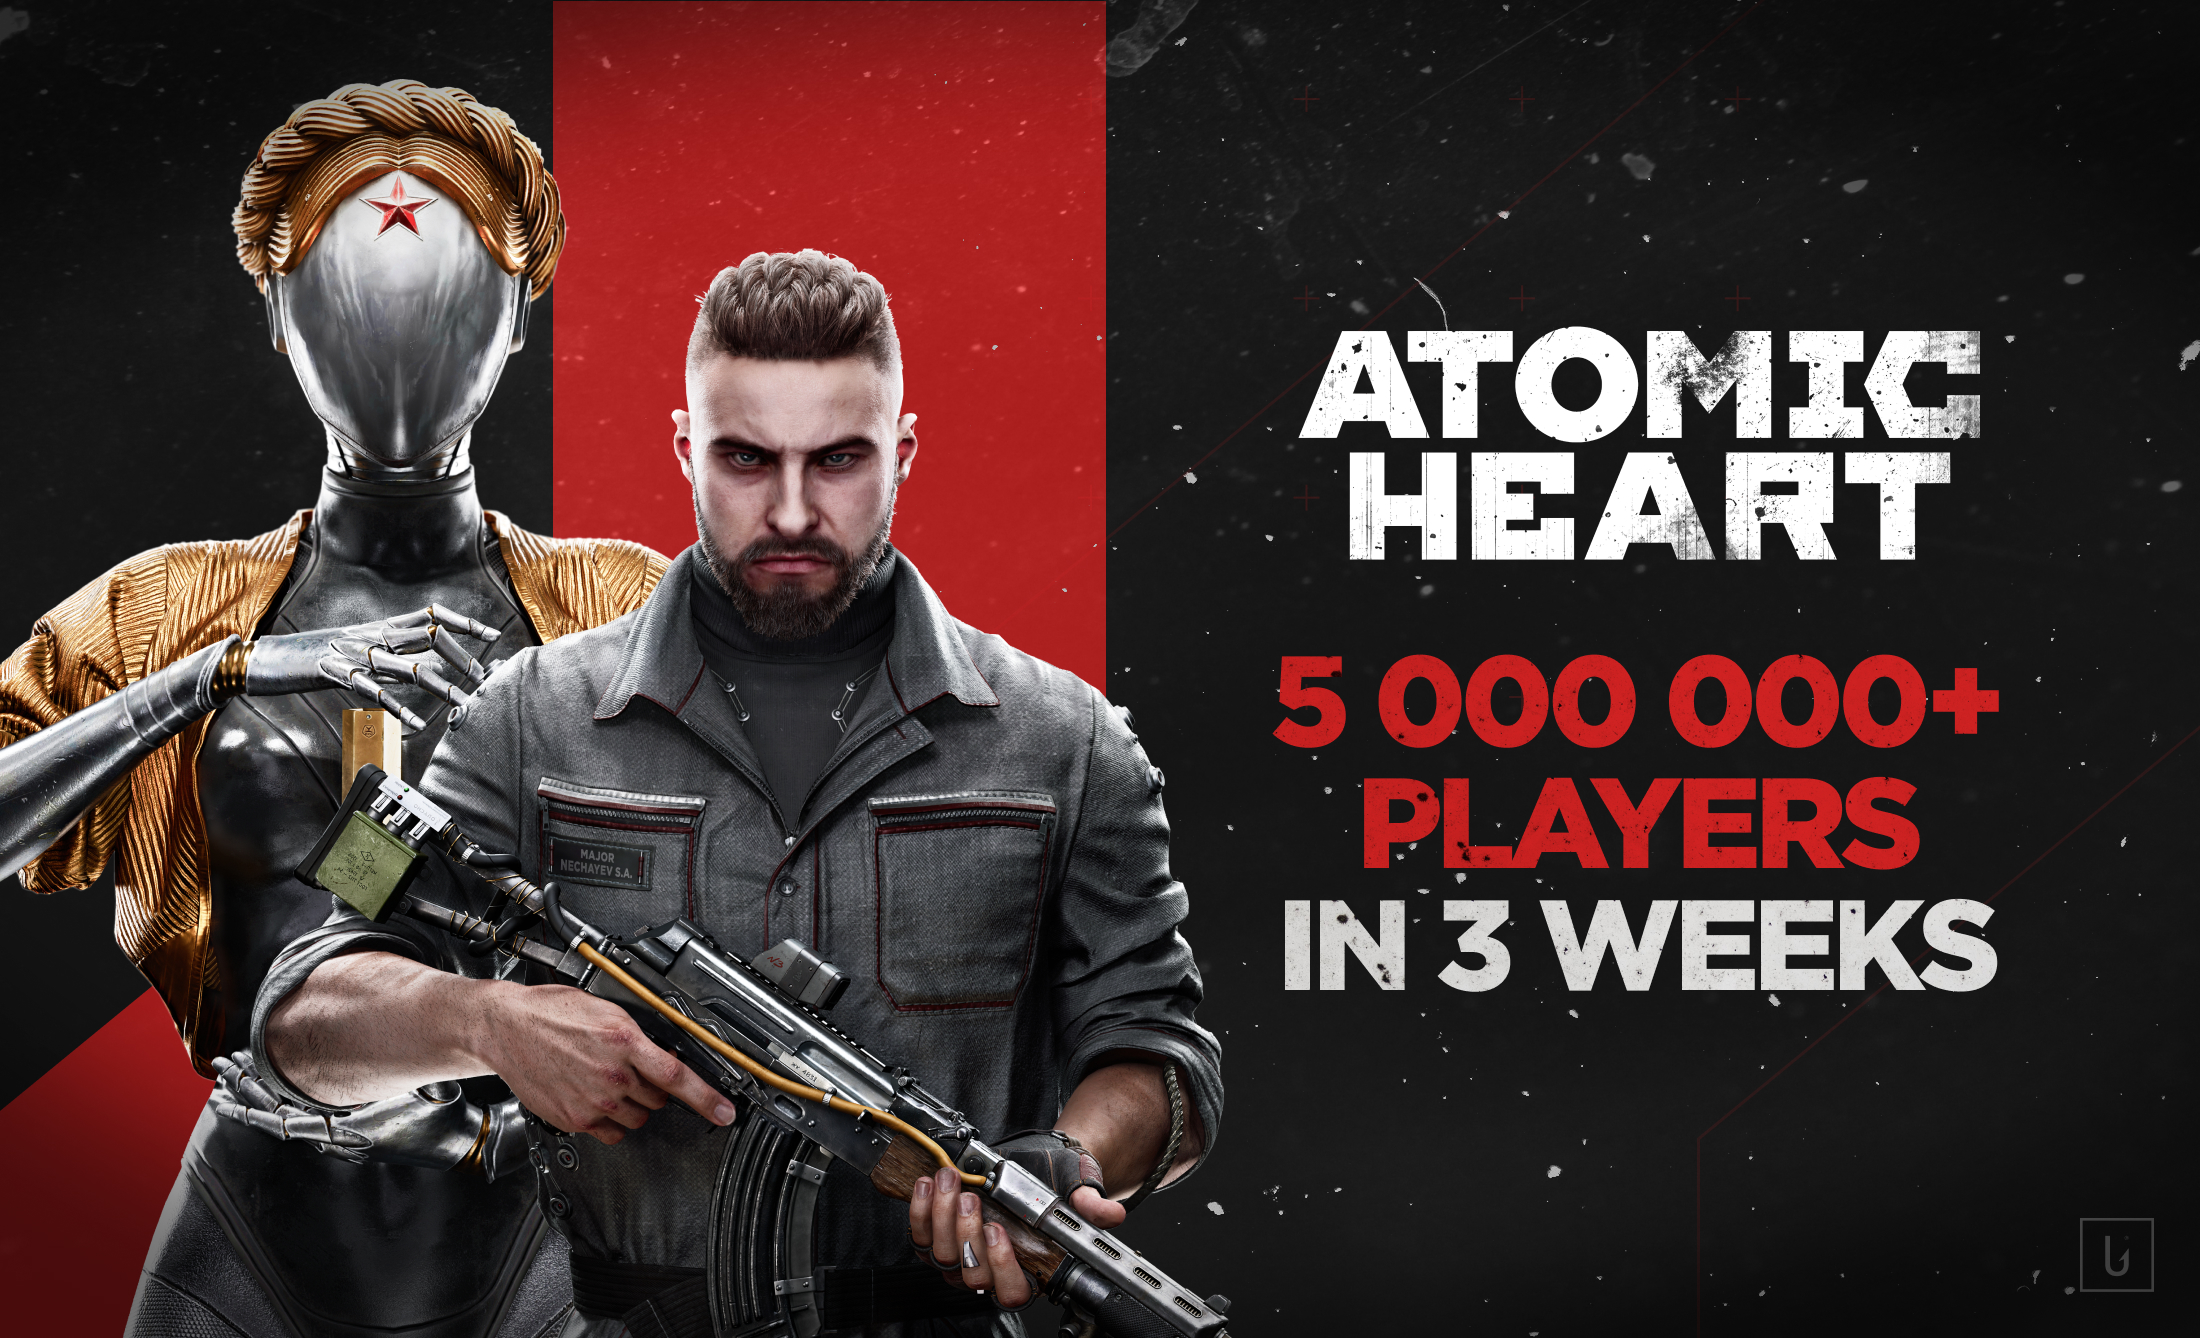 《原子之心》發售三周突破500萬玩家數DLC開發中